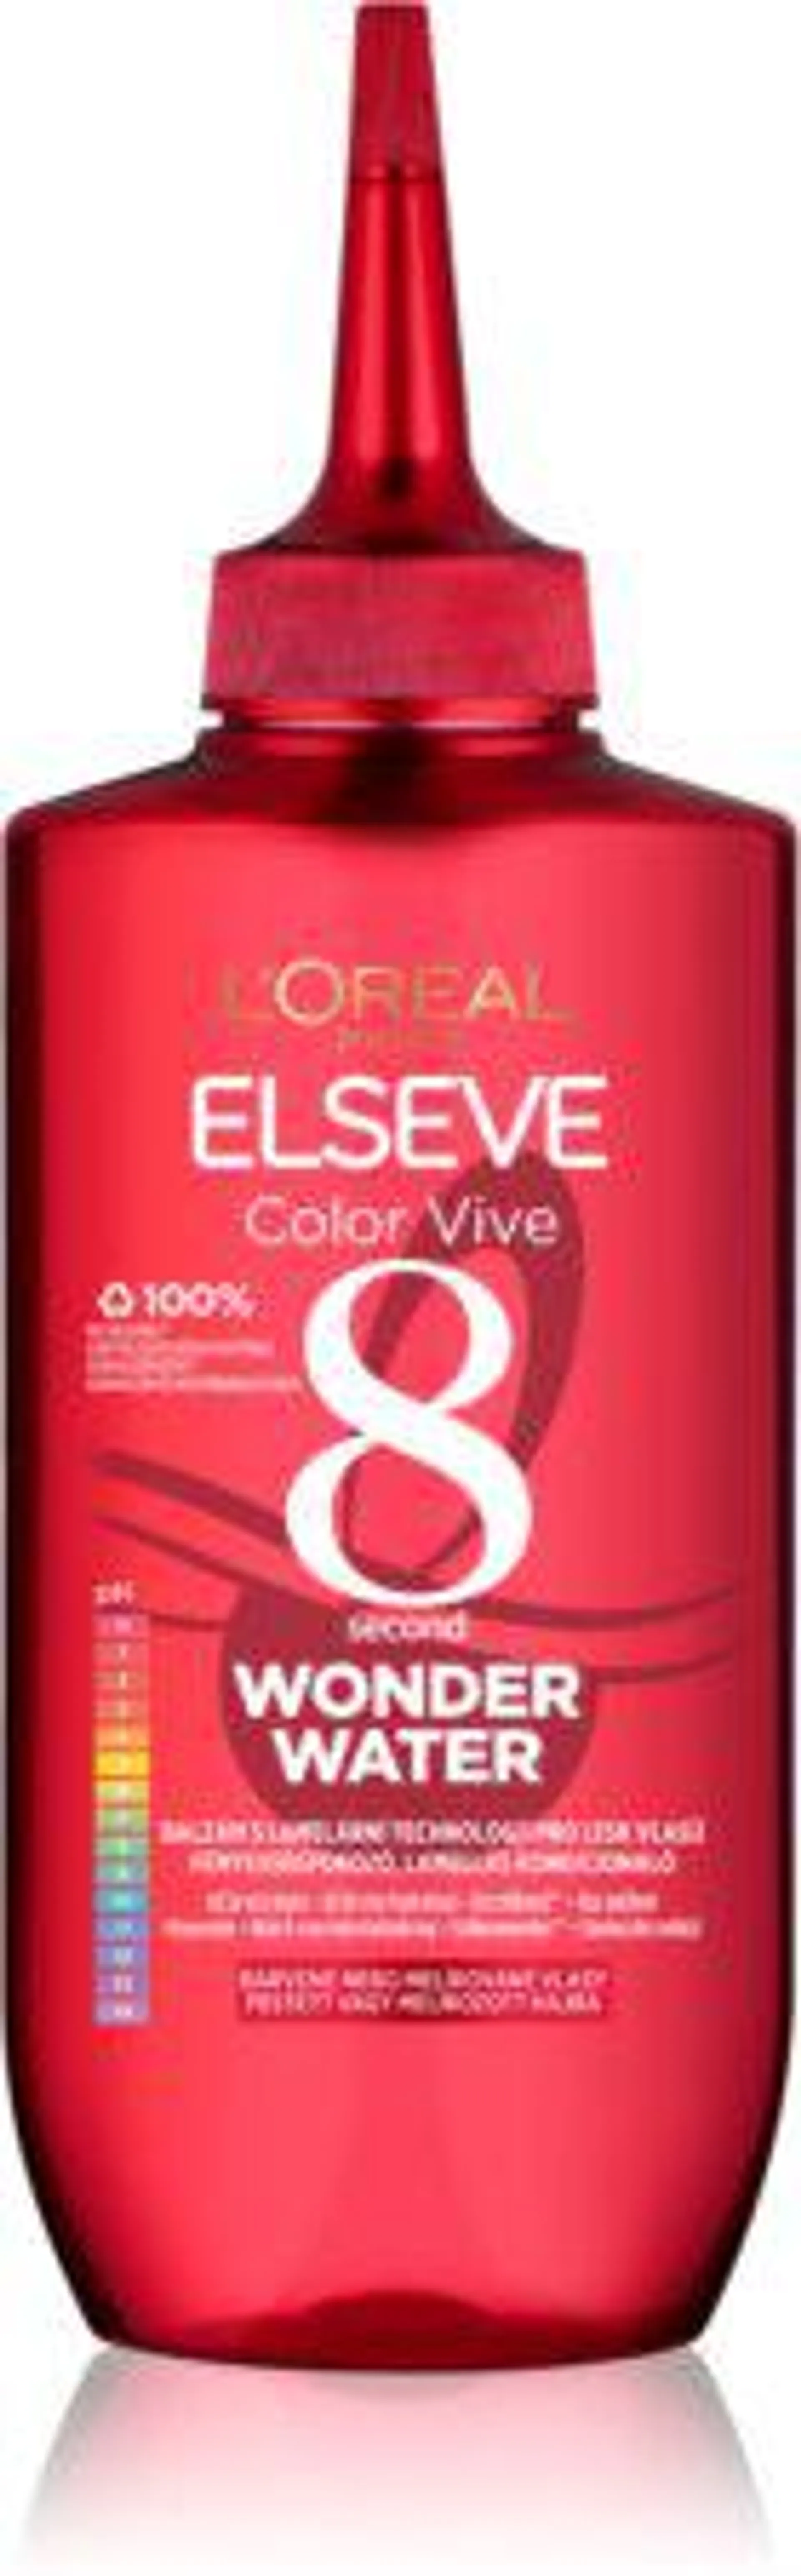 Elseve Color-Vive Wonder Water